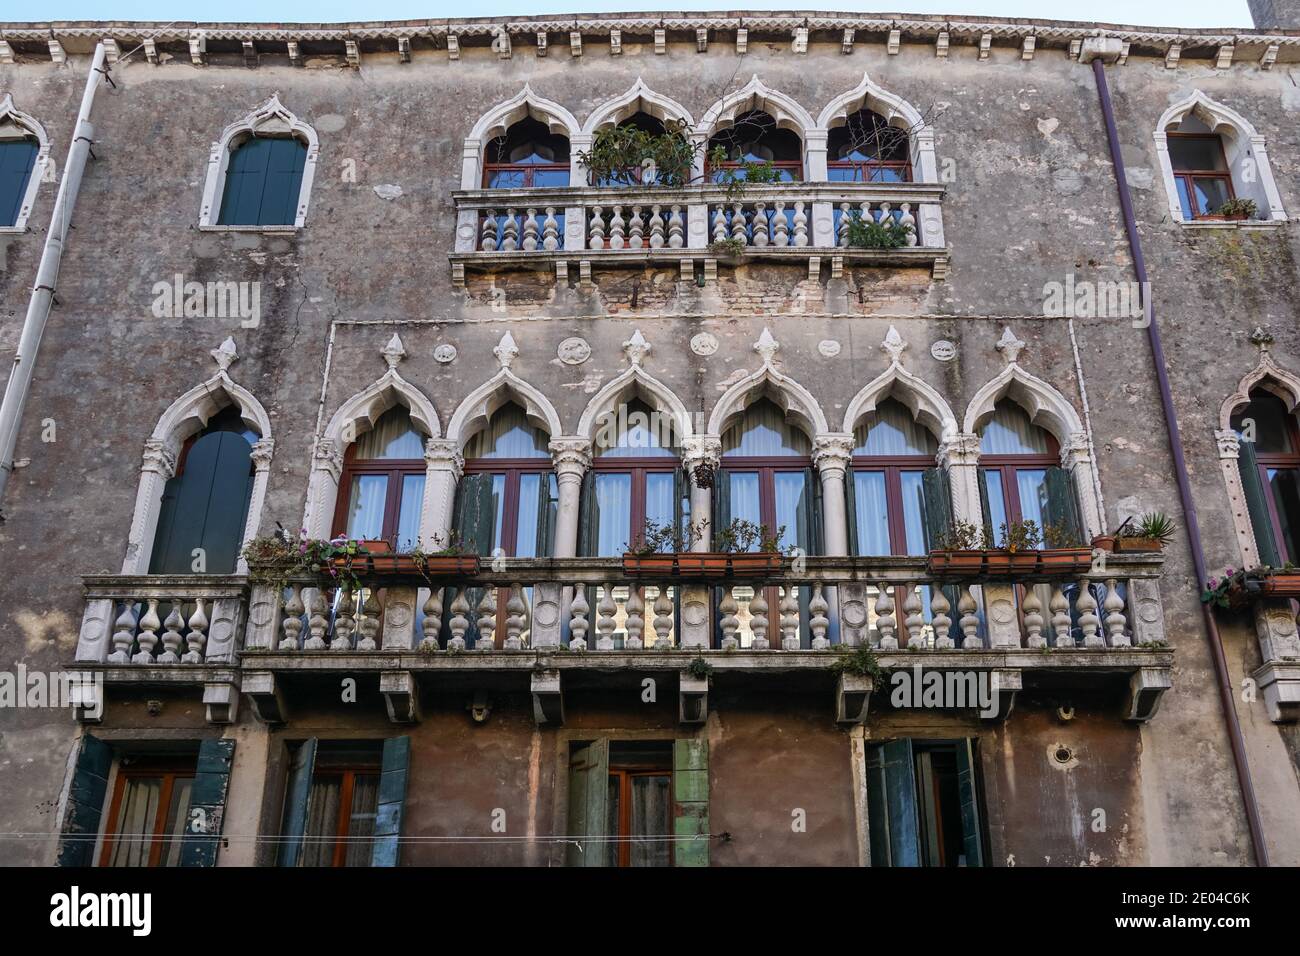 Antico edificio veneziano tradizionale sul canale del rio della Misericordia nel sestiere di Cannaregio, Venezia, Italia Foto Stock